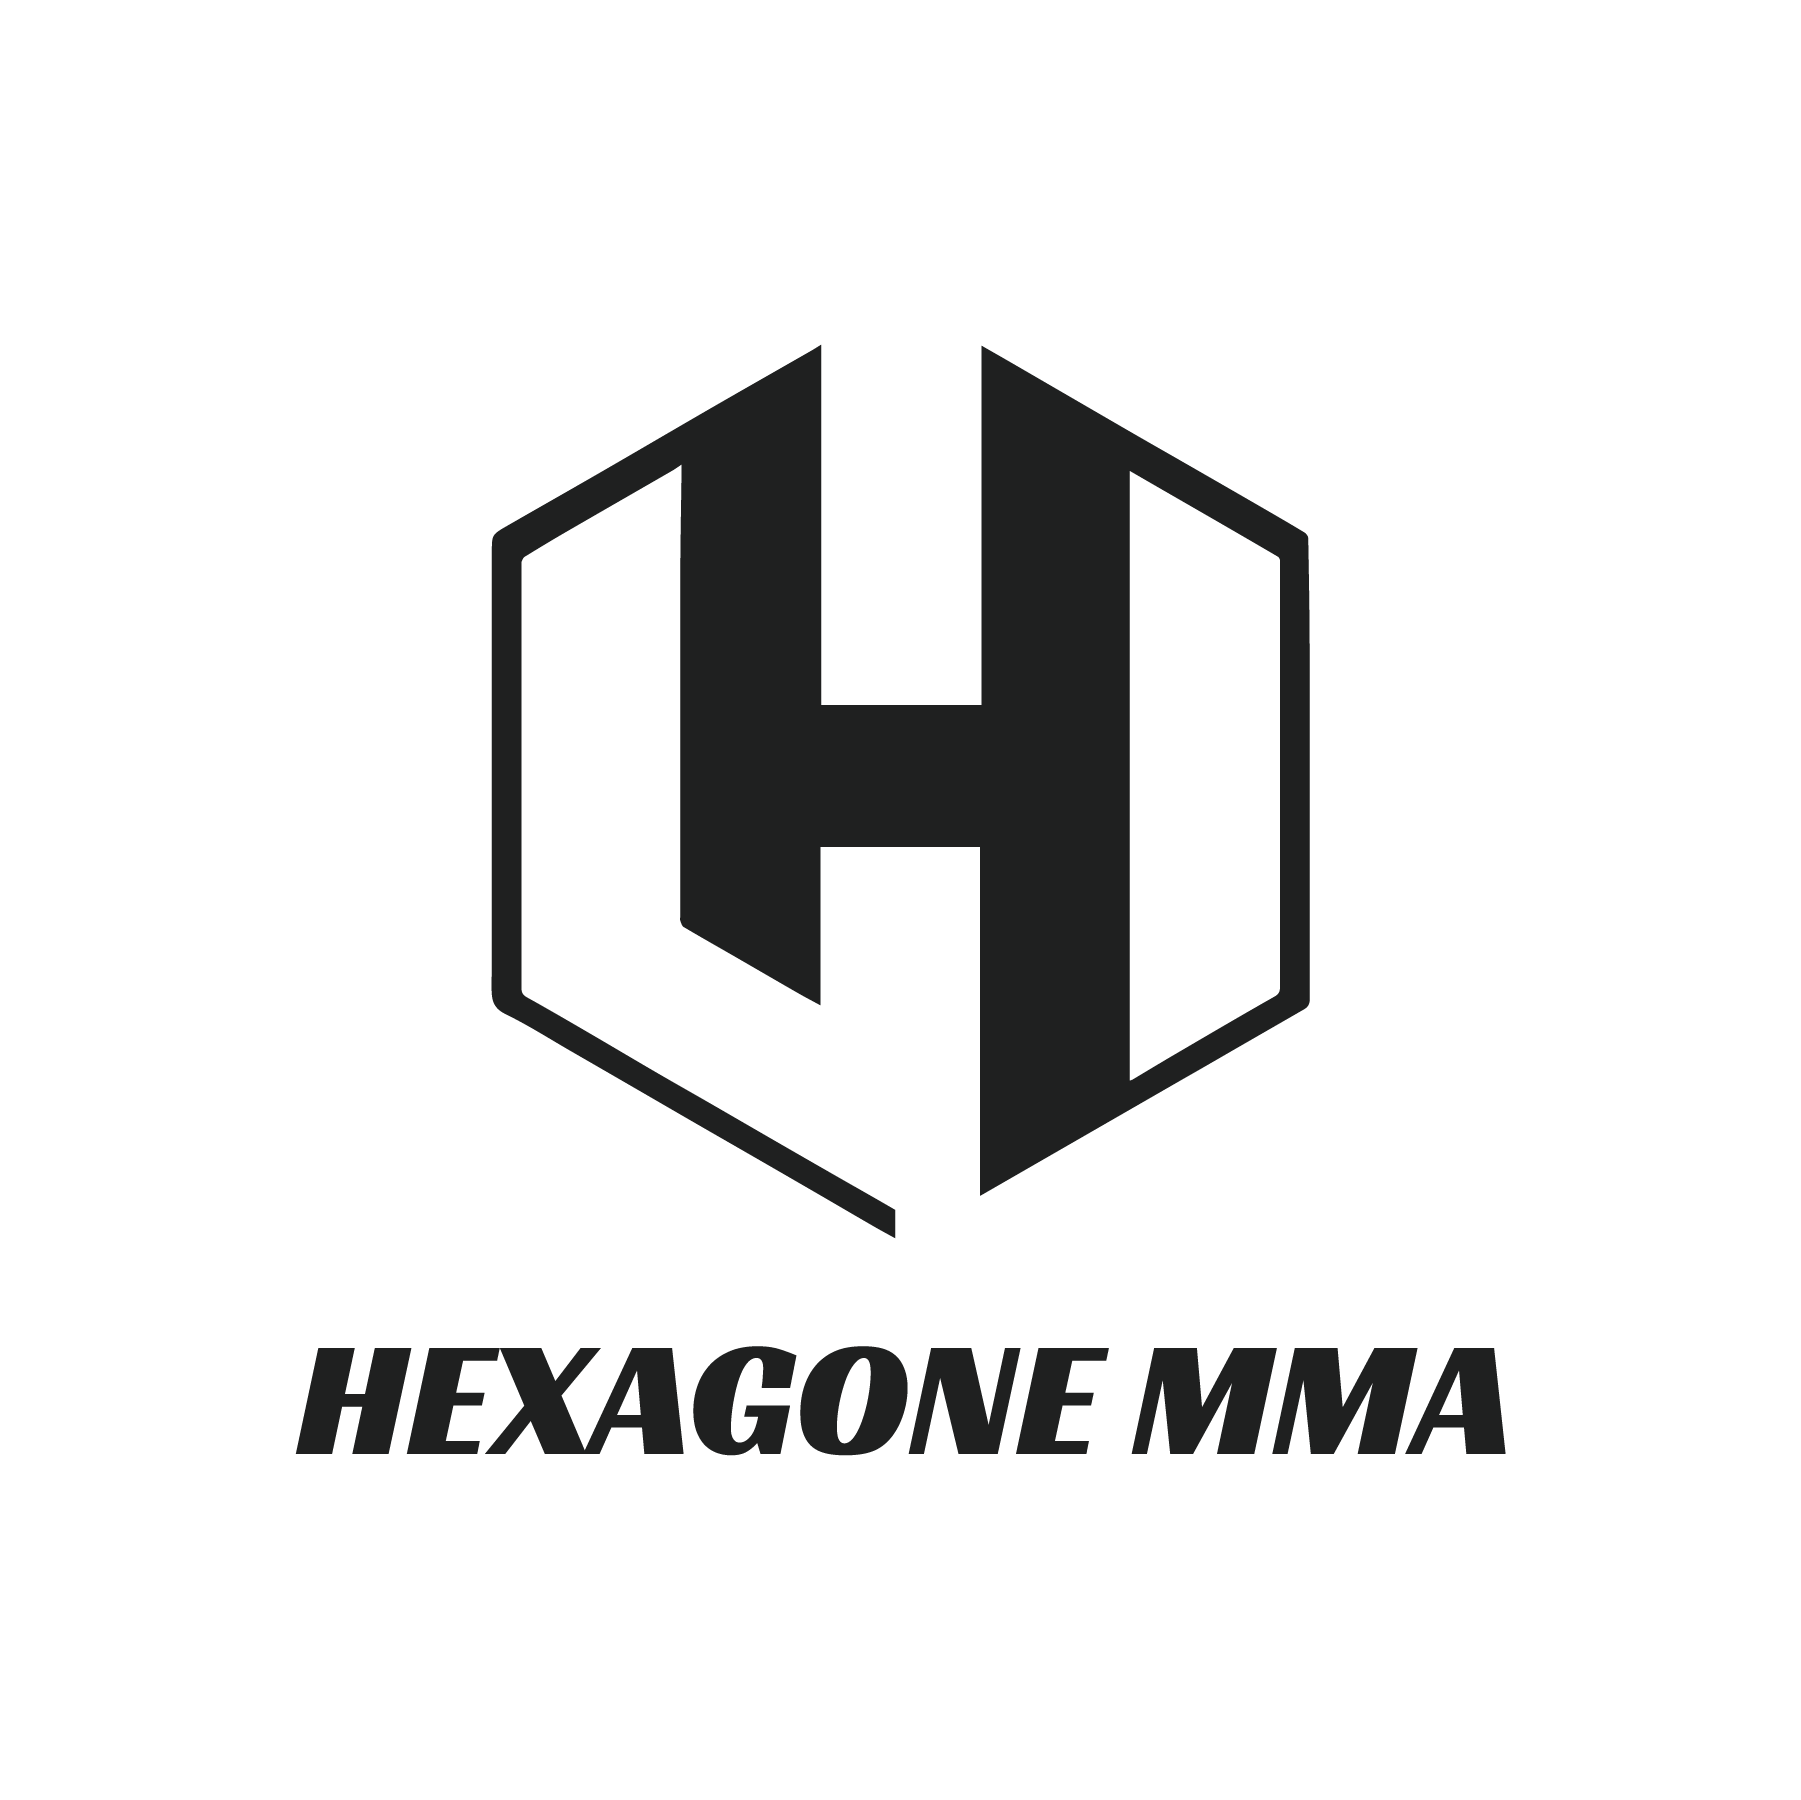 Background HEXAGONE MMA